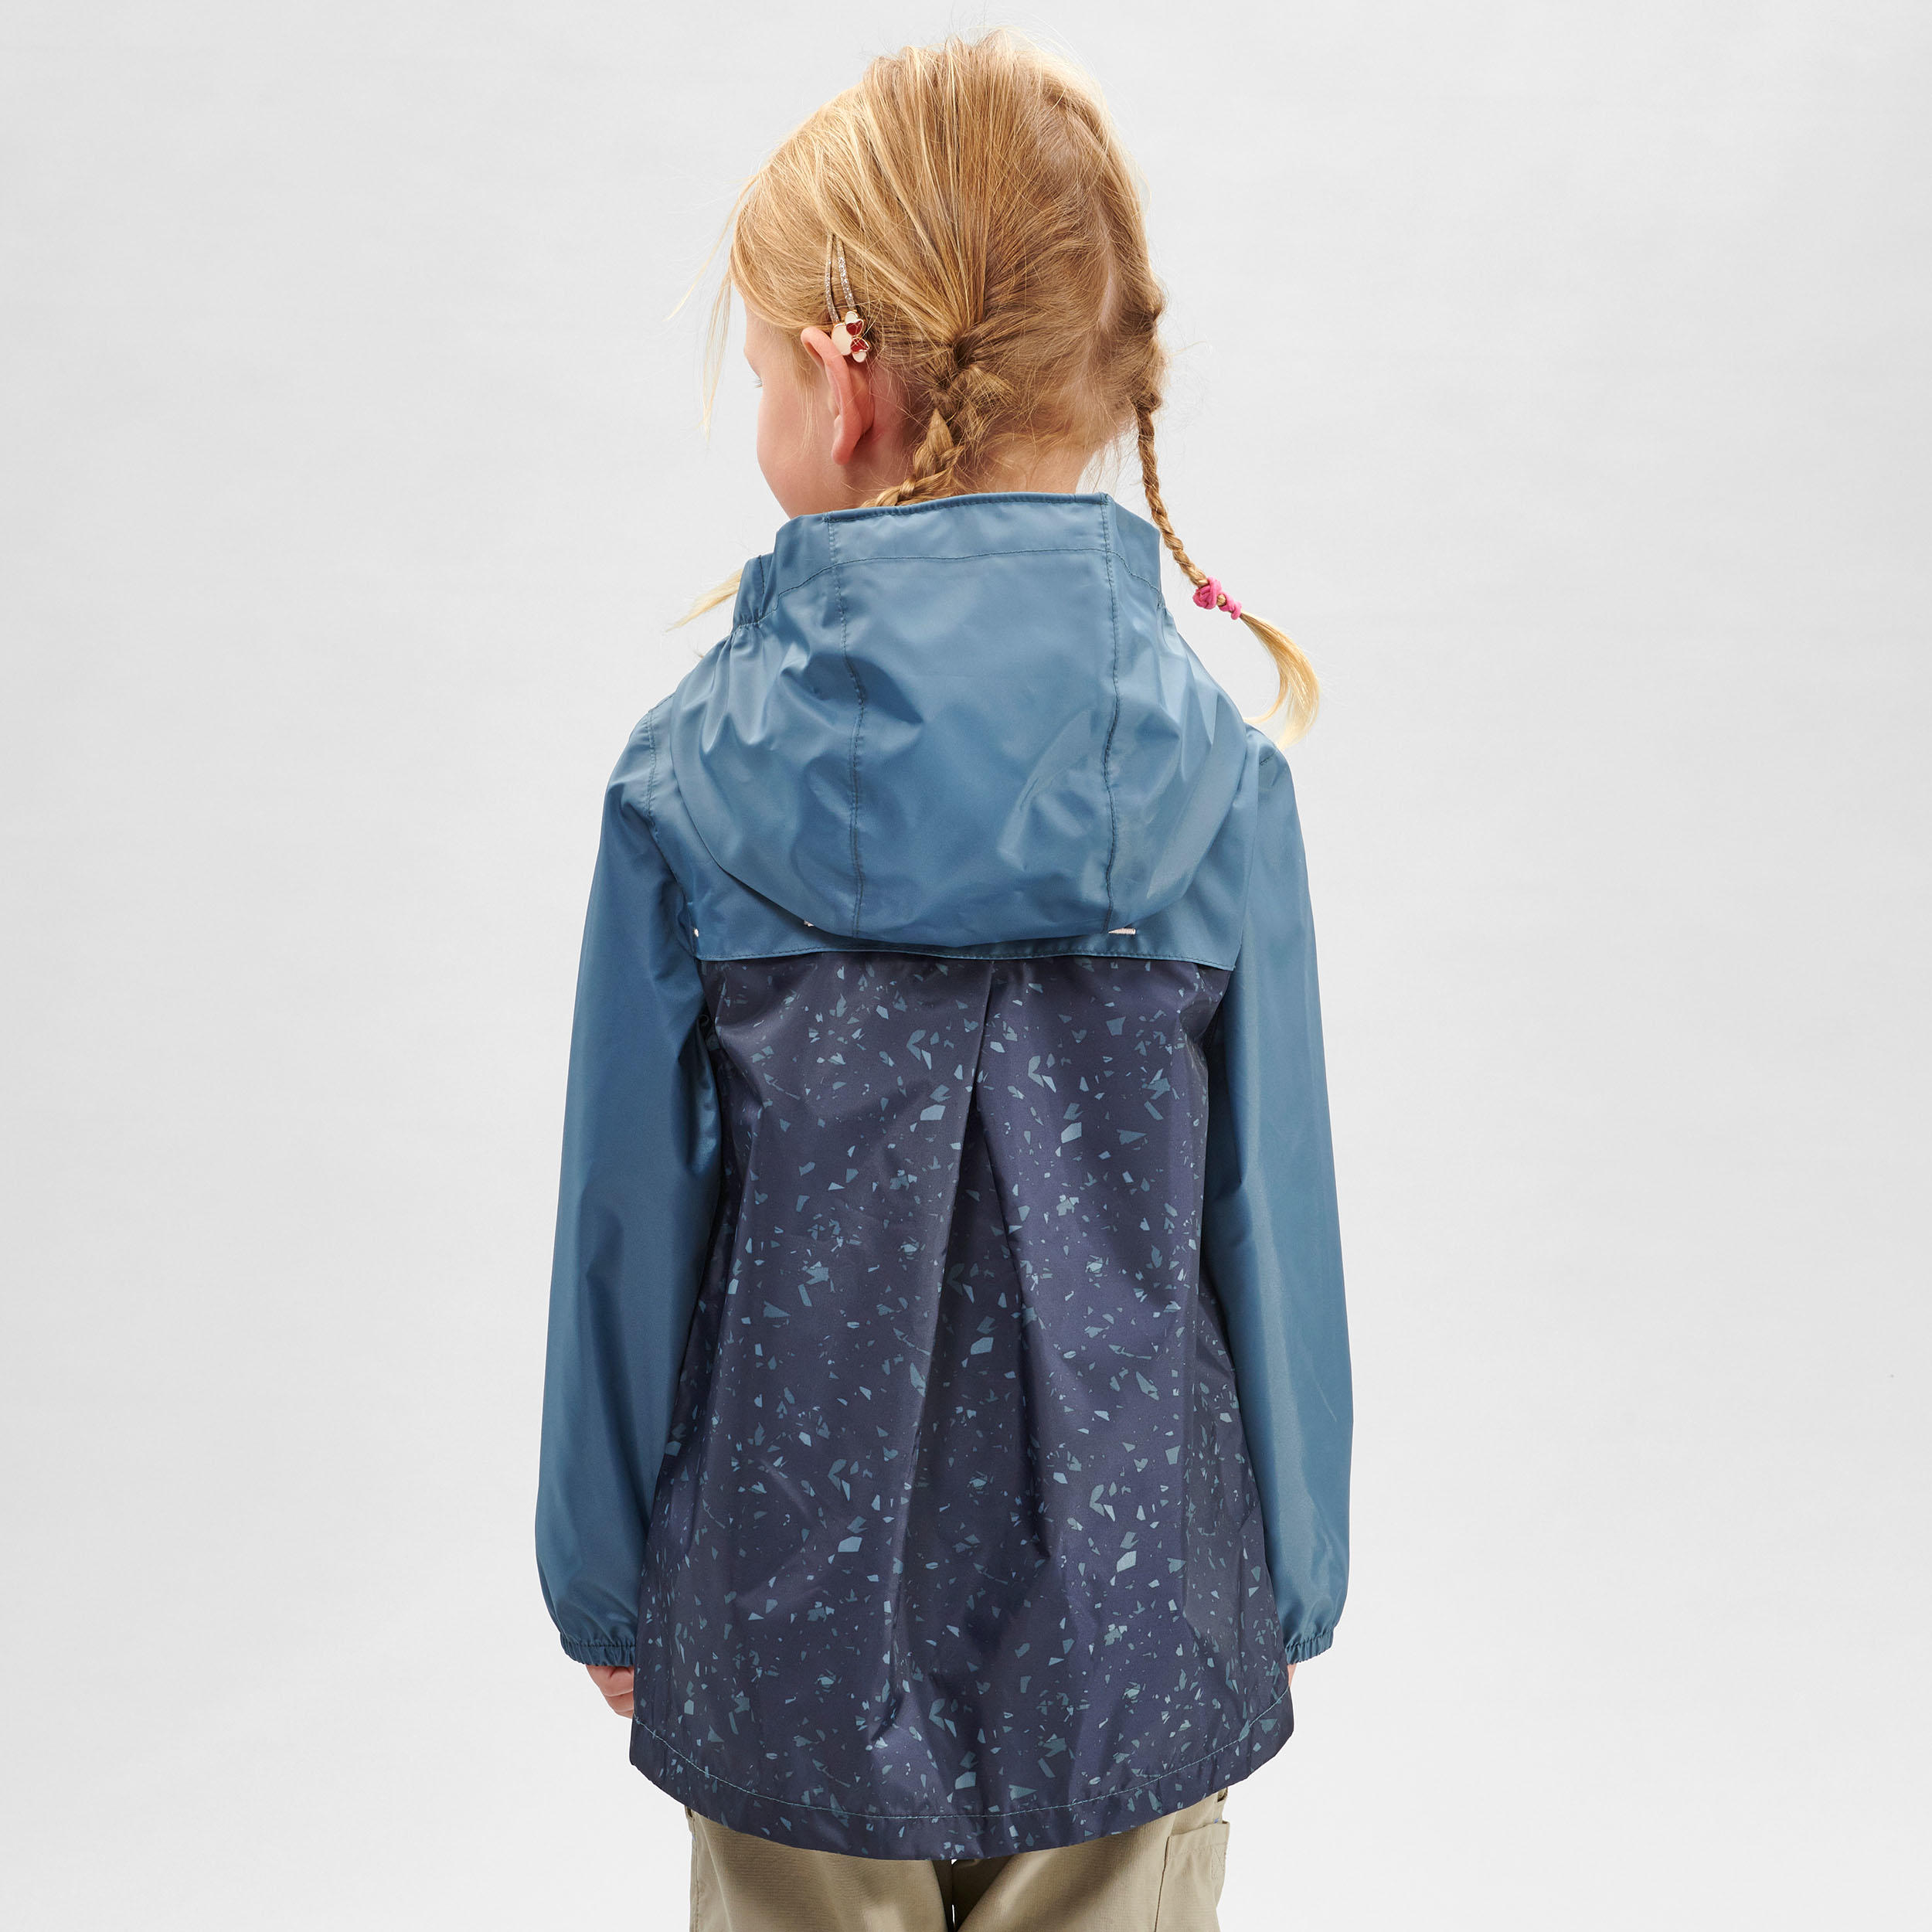 Manteau de randonnée montagne enfant - MH 100 gris - QUECHUA